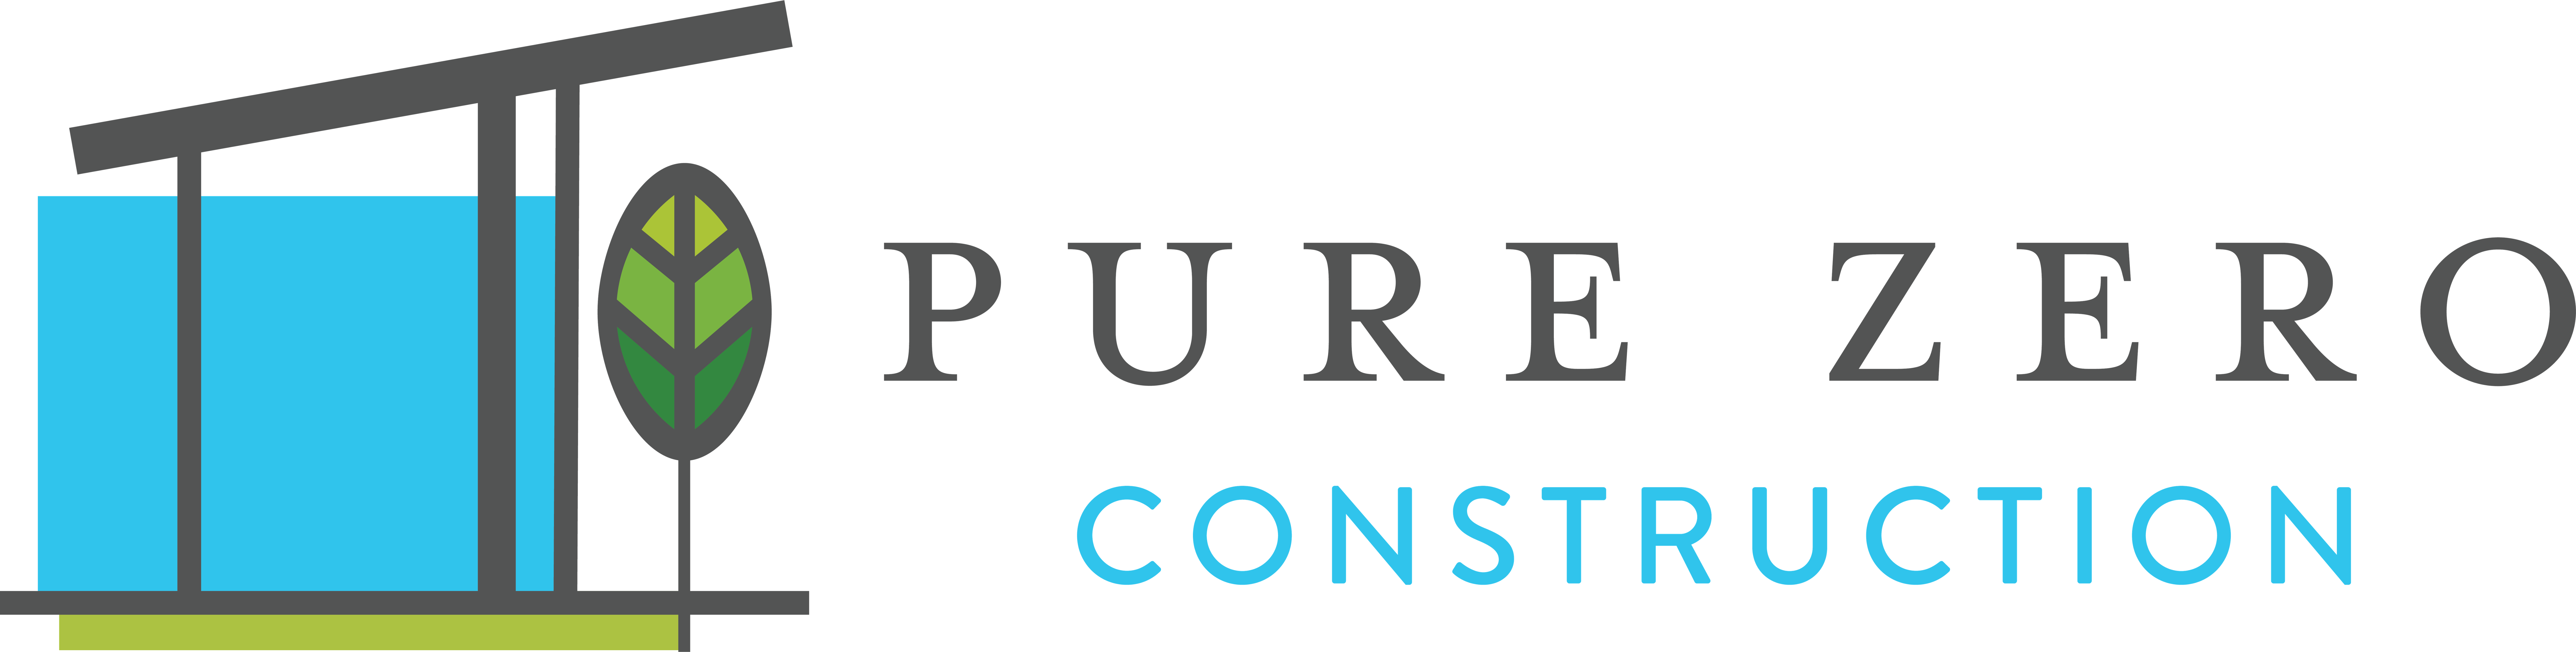 Pure Zero Construction, LLC company logo